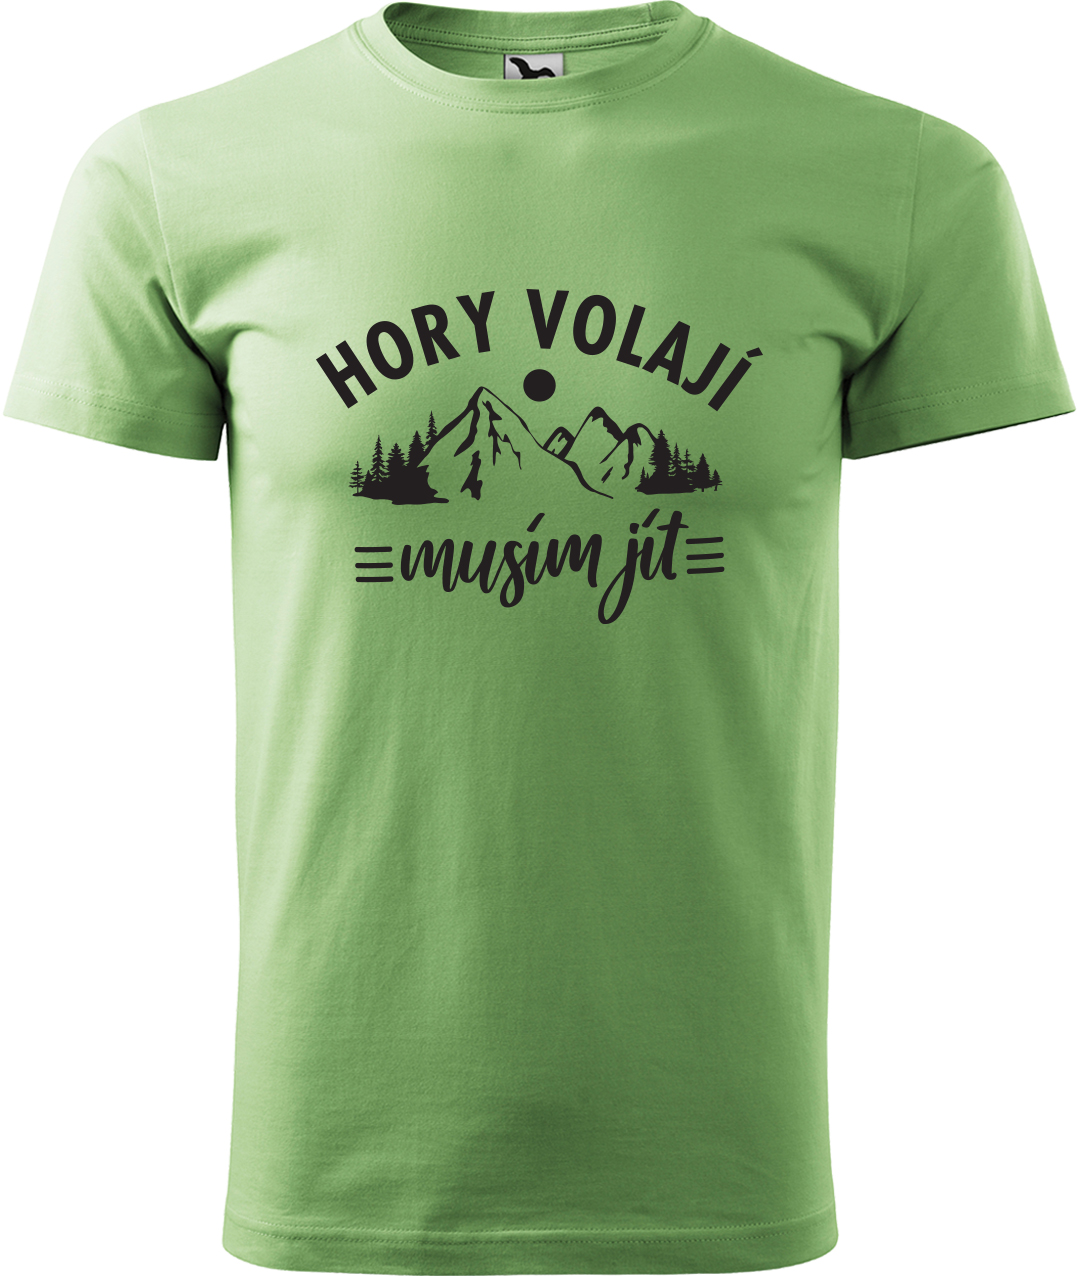 Pánské tričko na hory - Hory volají, musím jít Velikost: M, Barva: Trávově zelená (39), Střih: pánský